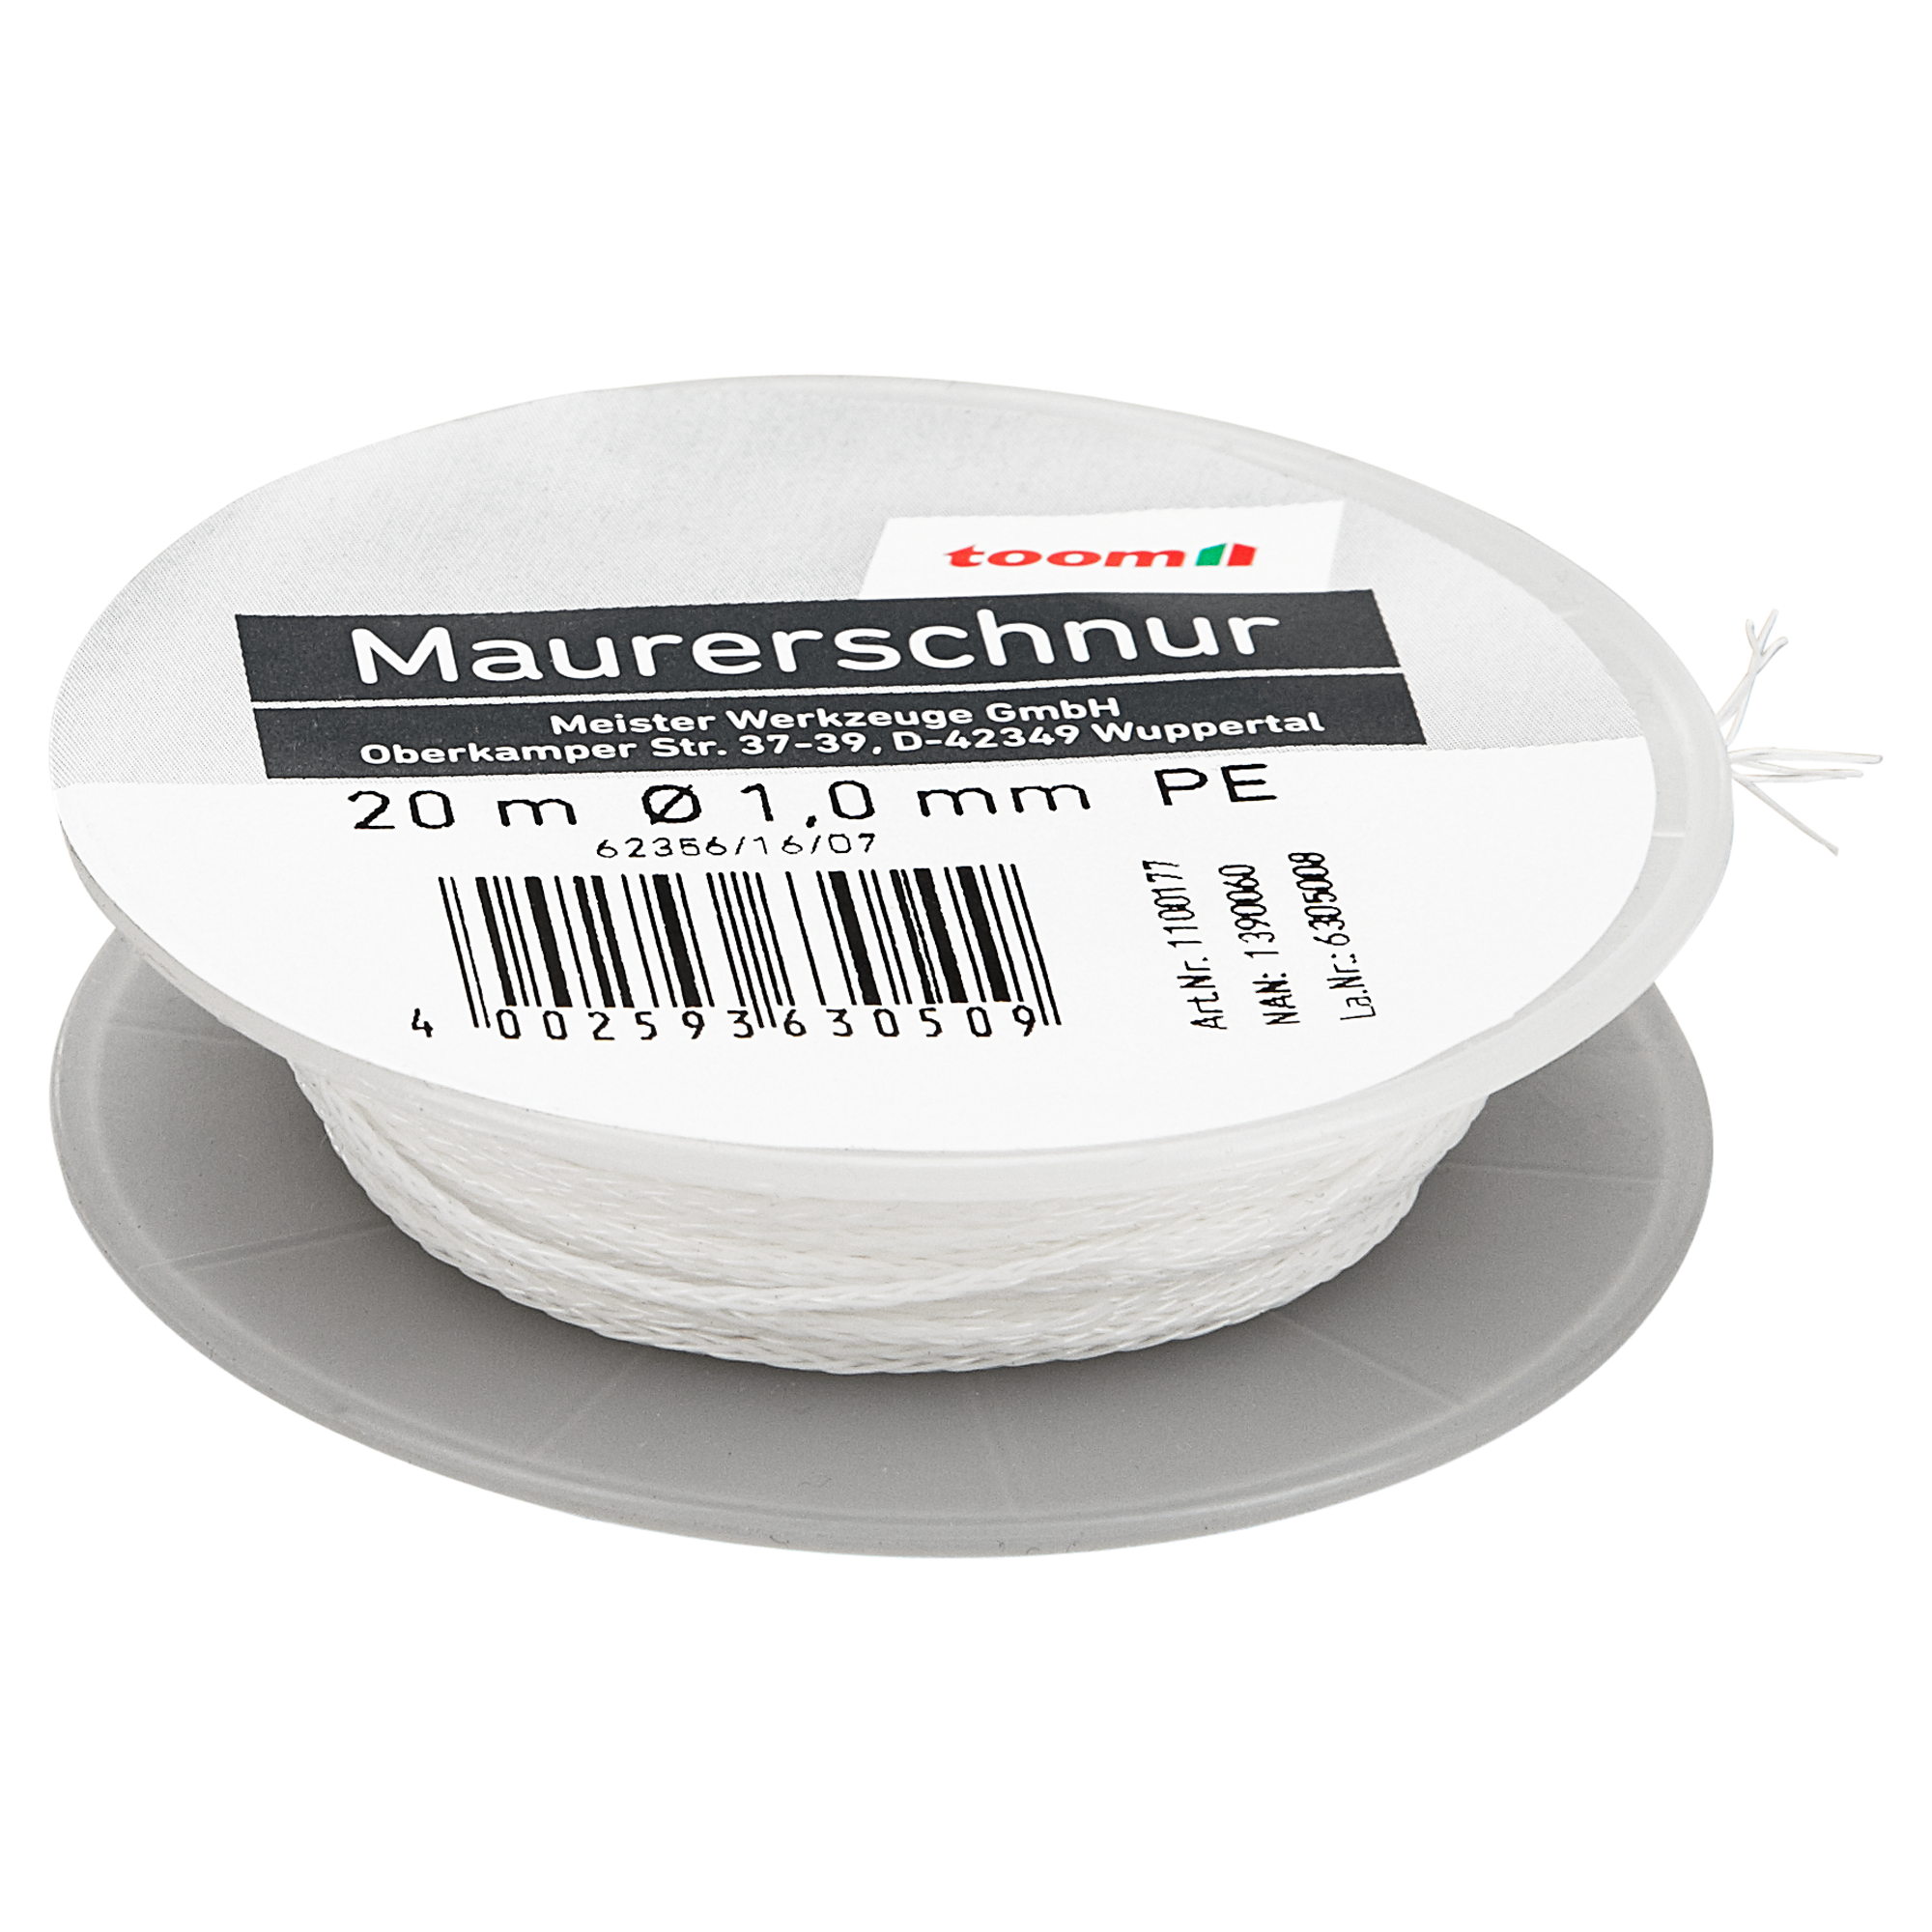 Maurerschnur weiß Ø 1 mm x 20 m + product picture